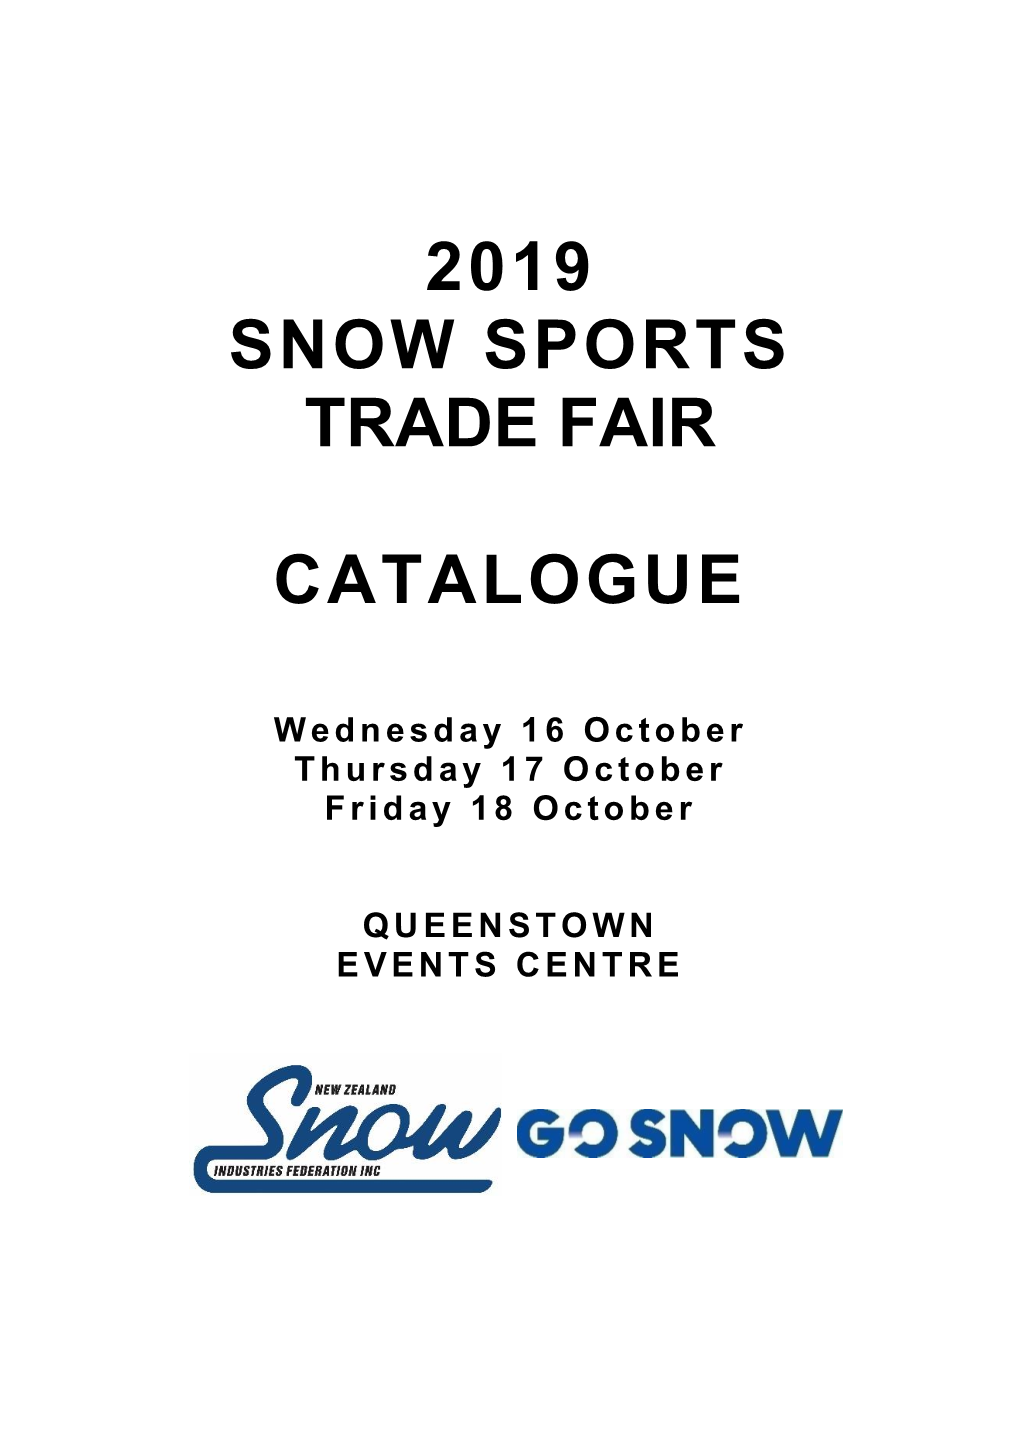 2019 Snow Sports Trade Fair Catalogue